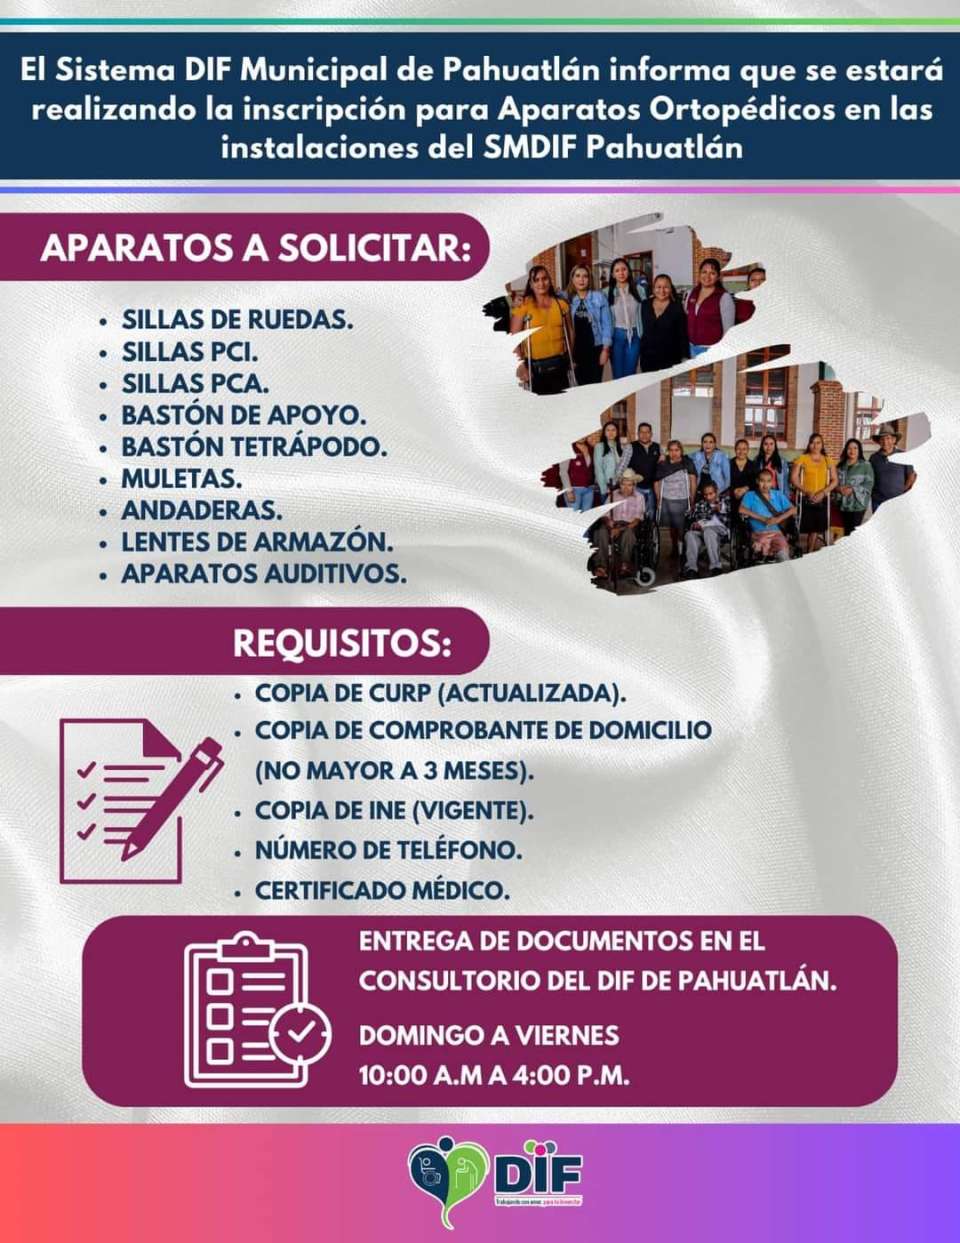 Abren inscripción para el programa “Aparatos Ortopédicos” en el municipio de Pahuatlán